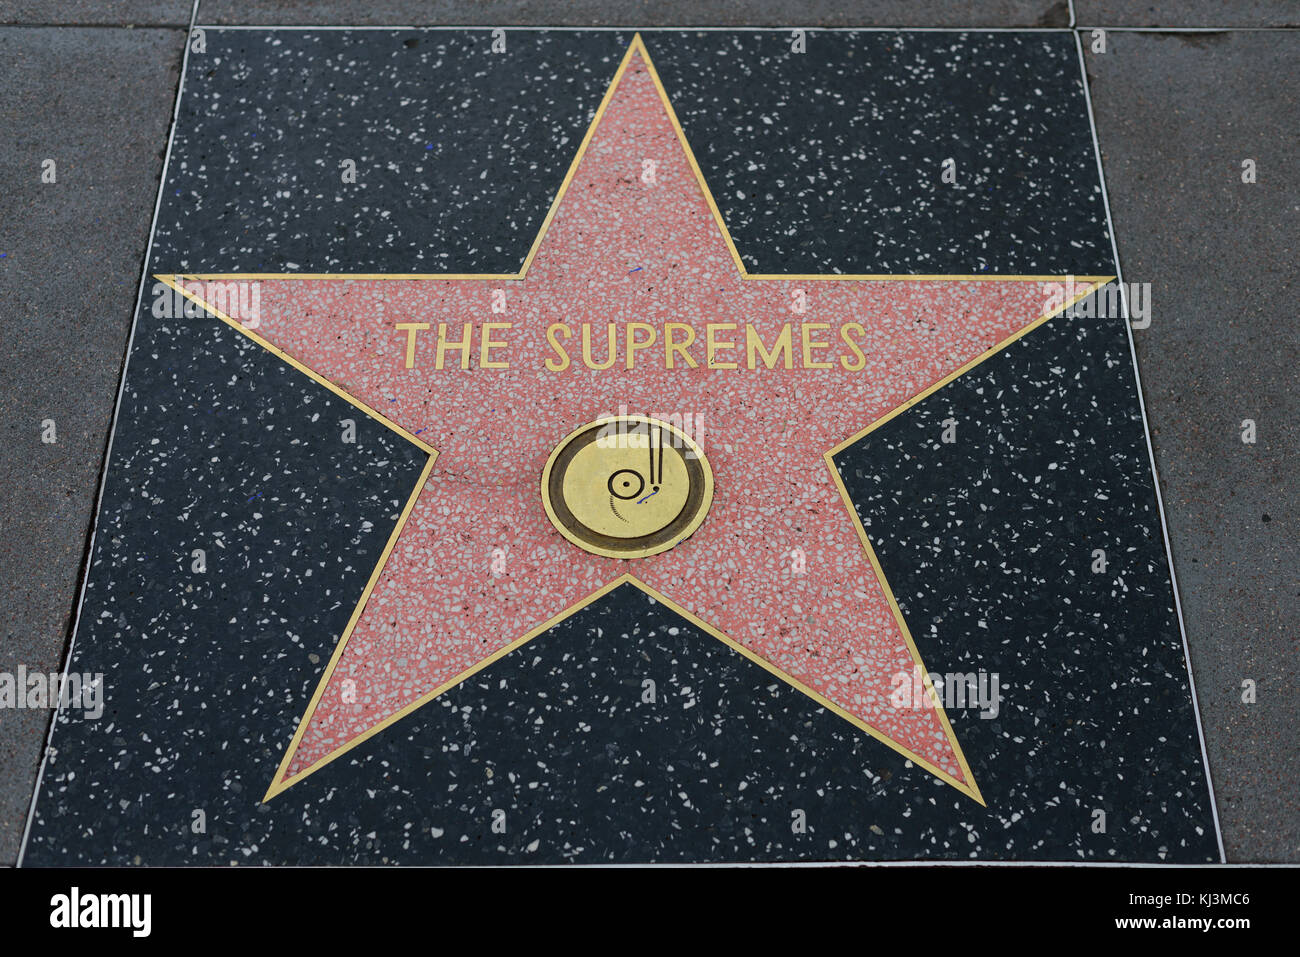 HOLLYWOOD, CA - DICEMBRE 06: La stella suprema sulla Hollywood Walk of Fame a Hollywood, California il 6 dicembre 2016. Foto Stock